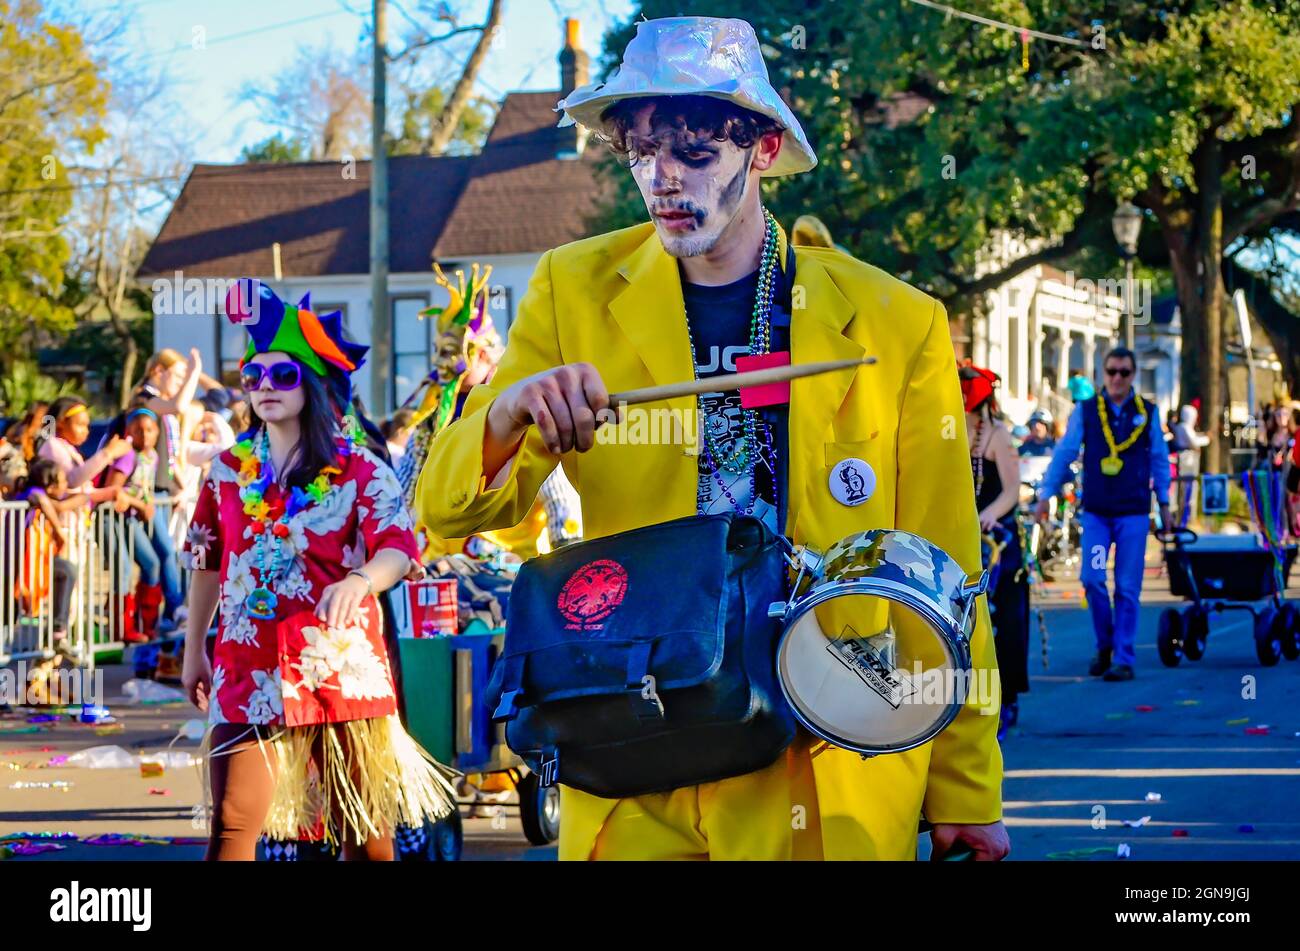 Ein Mann, der als El Catrin oder Catrines Hombres gekleidet ist, spielt eine kleine Trommel, während er während der Mardi Gras Parade am Joe Cain Day, 7. Februar 2016, in Mobile marschiert. Stockfoto